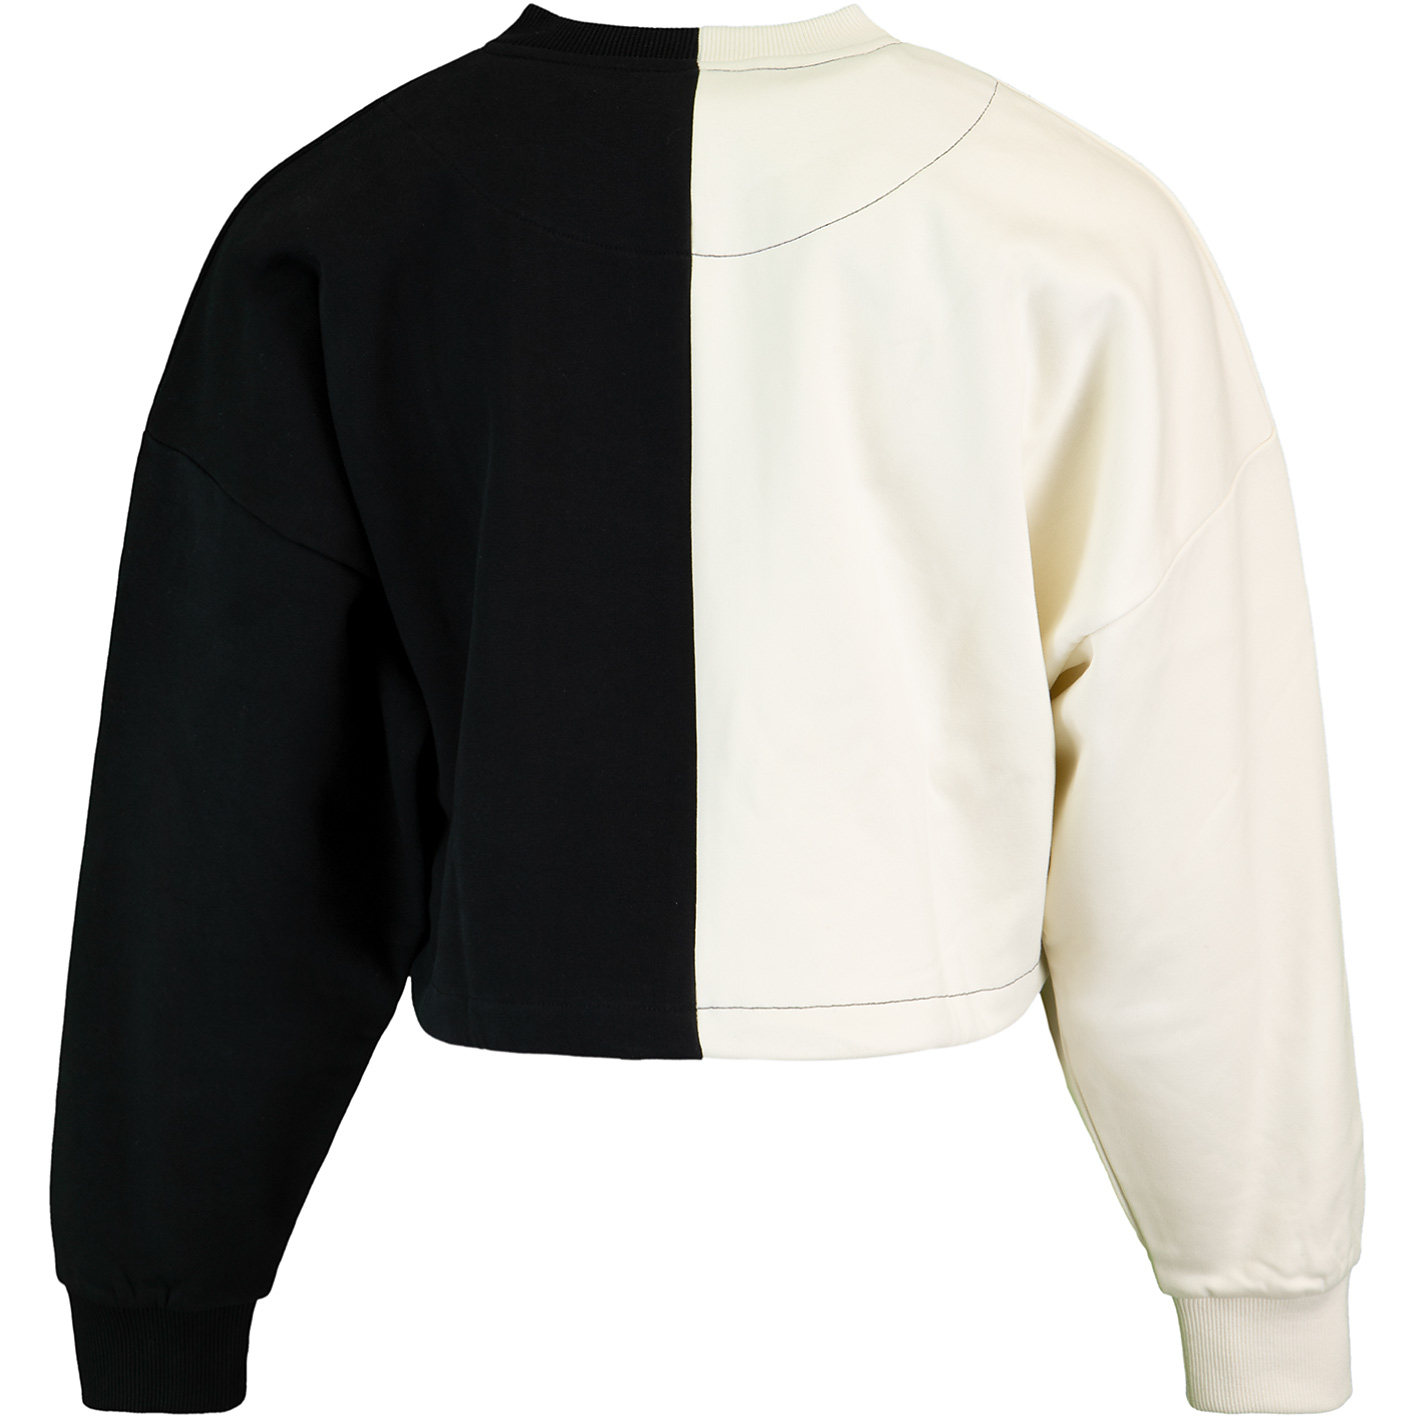 ☆ Karl Kani Signature Block Cropped Damen Sweatshirt weiß/schwarz - hier  bestellen!